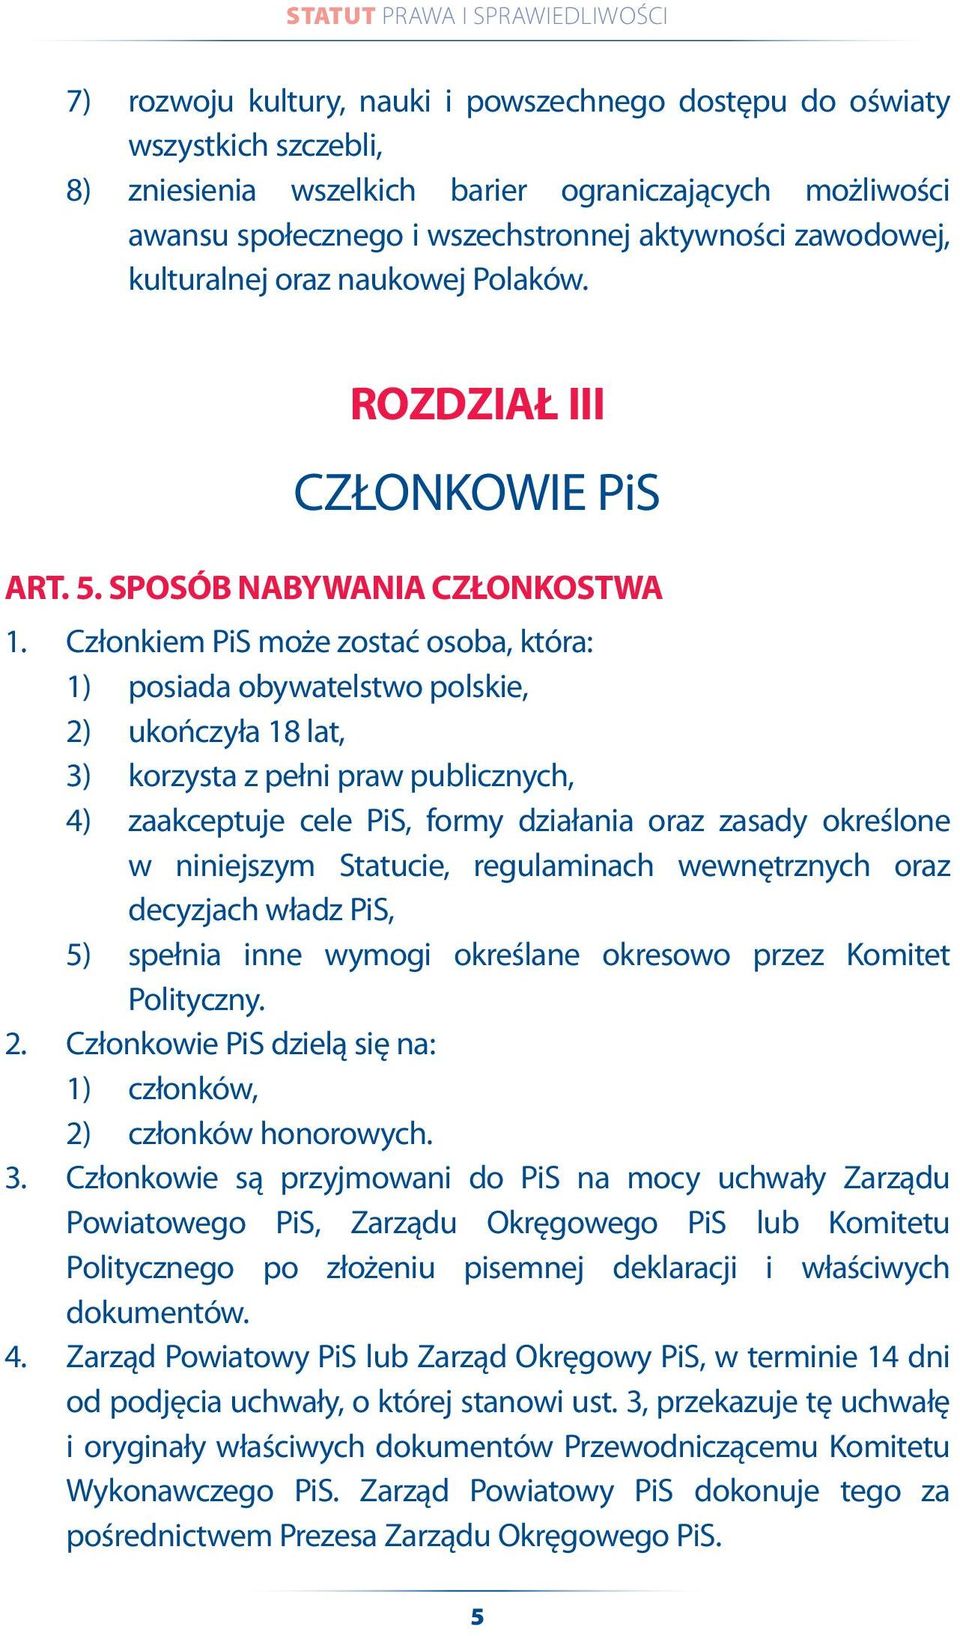 Członkiem PiS może zostać osoba, która: 1) posiada obywatelstwo polskie, 2) ukończyła 18 lat, 3) korzysta z pełni praw publicznych, 4) zaakceptuje cele PiS, formy działania oraz zasady określone w